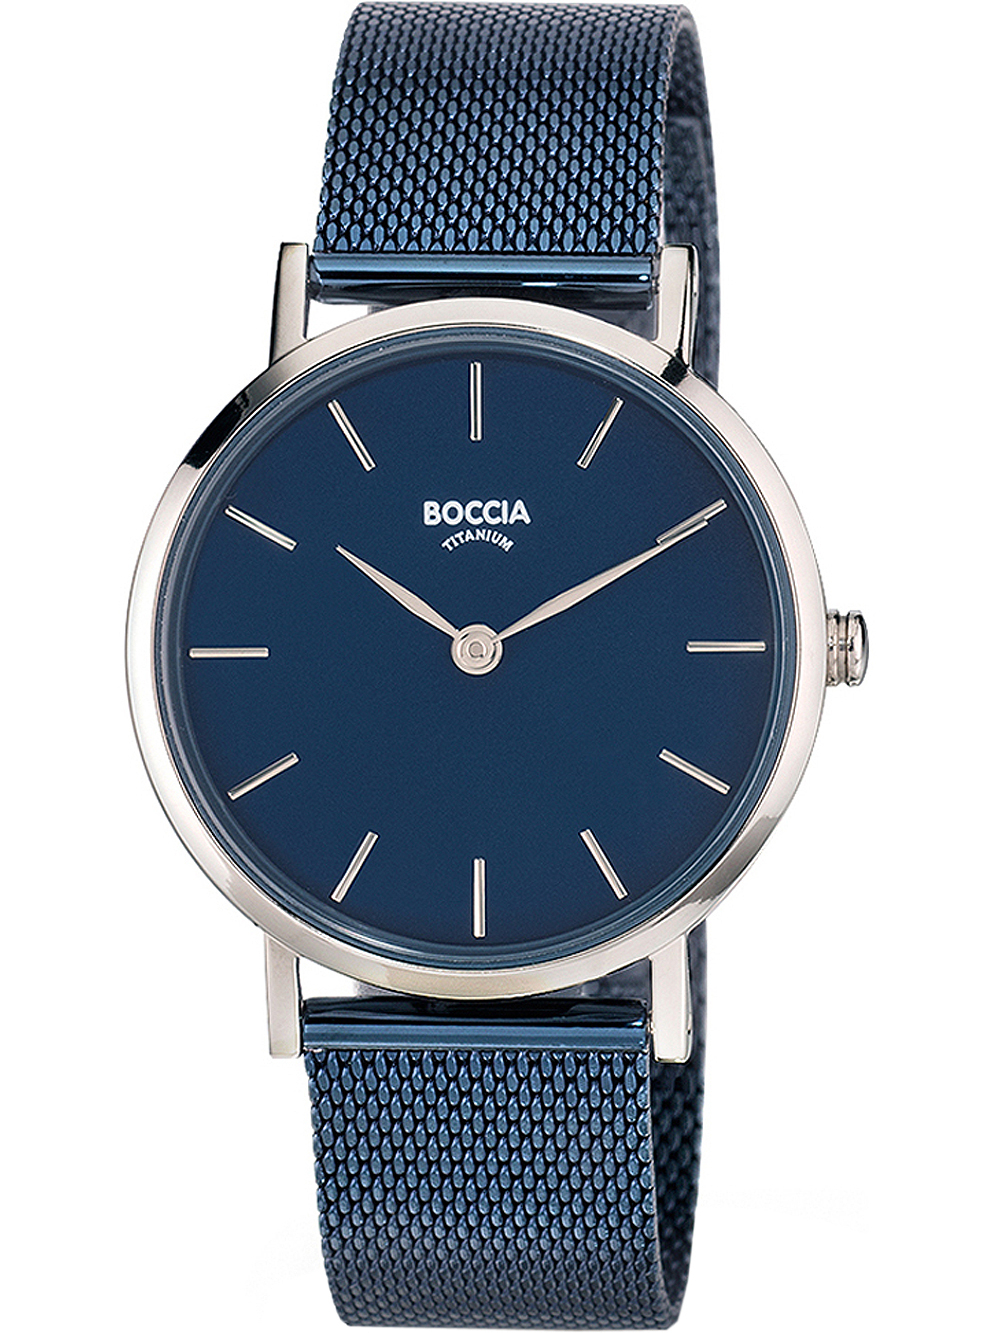 Dámské hodinky Boccia 3281-07 ladies watch titanium 32mm 3ATM